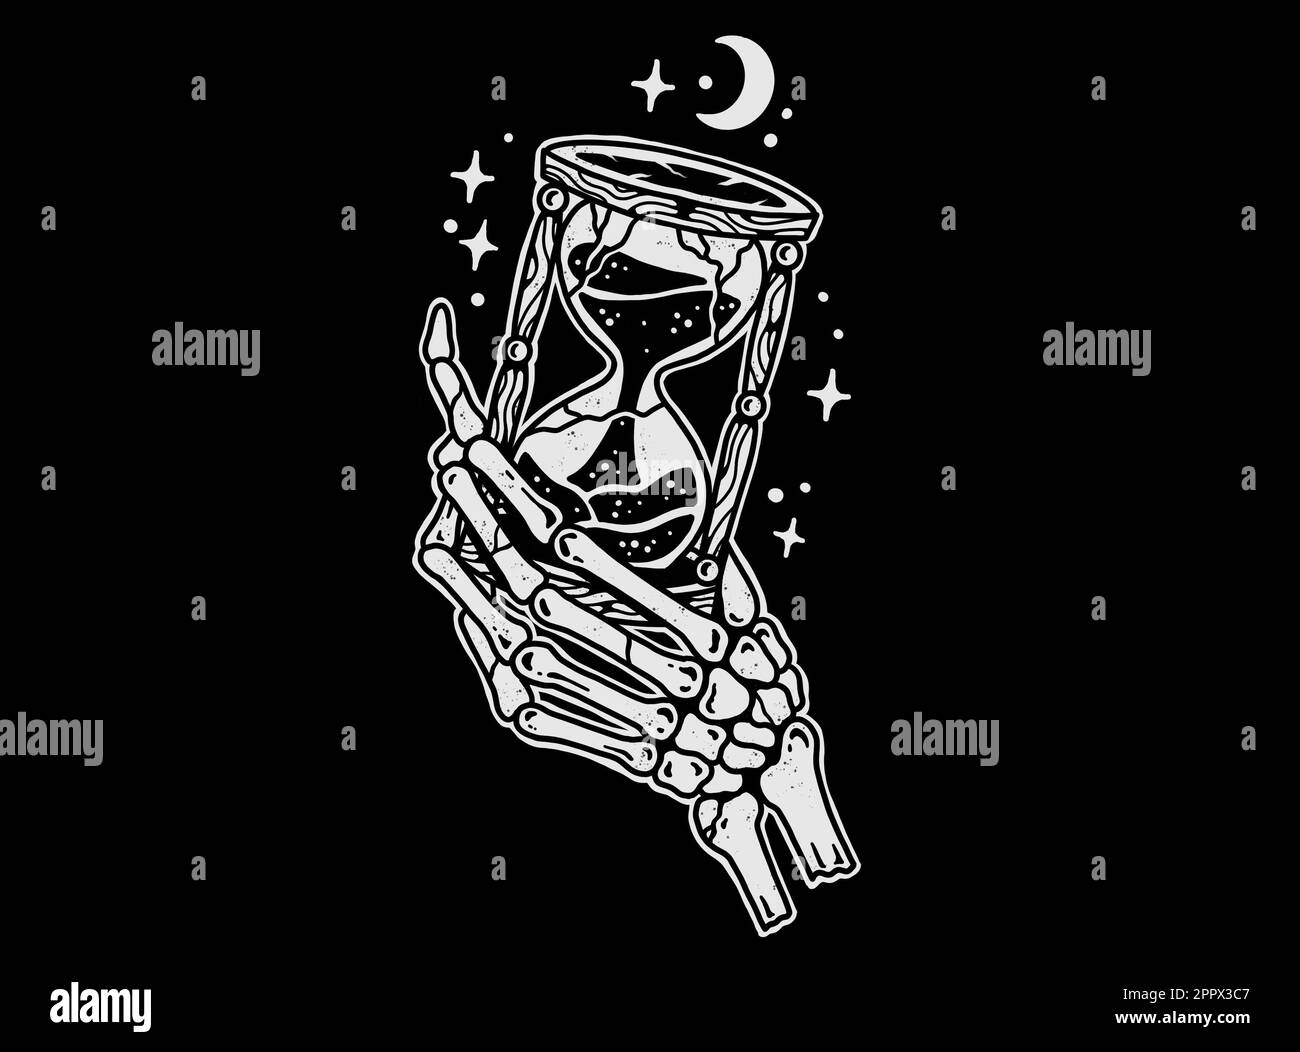 Vom Tattoo-Stil inspiriertes Grafikdesign auf schwarzem Hintergrund, Skelett, Hand mit Hold-Hour-Glas Stockfoto